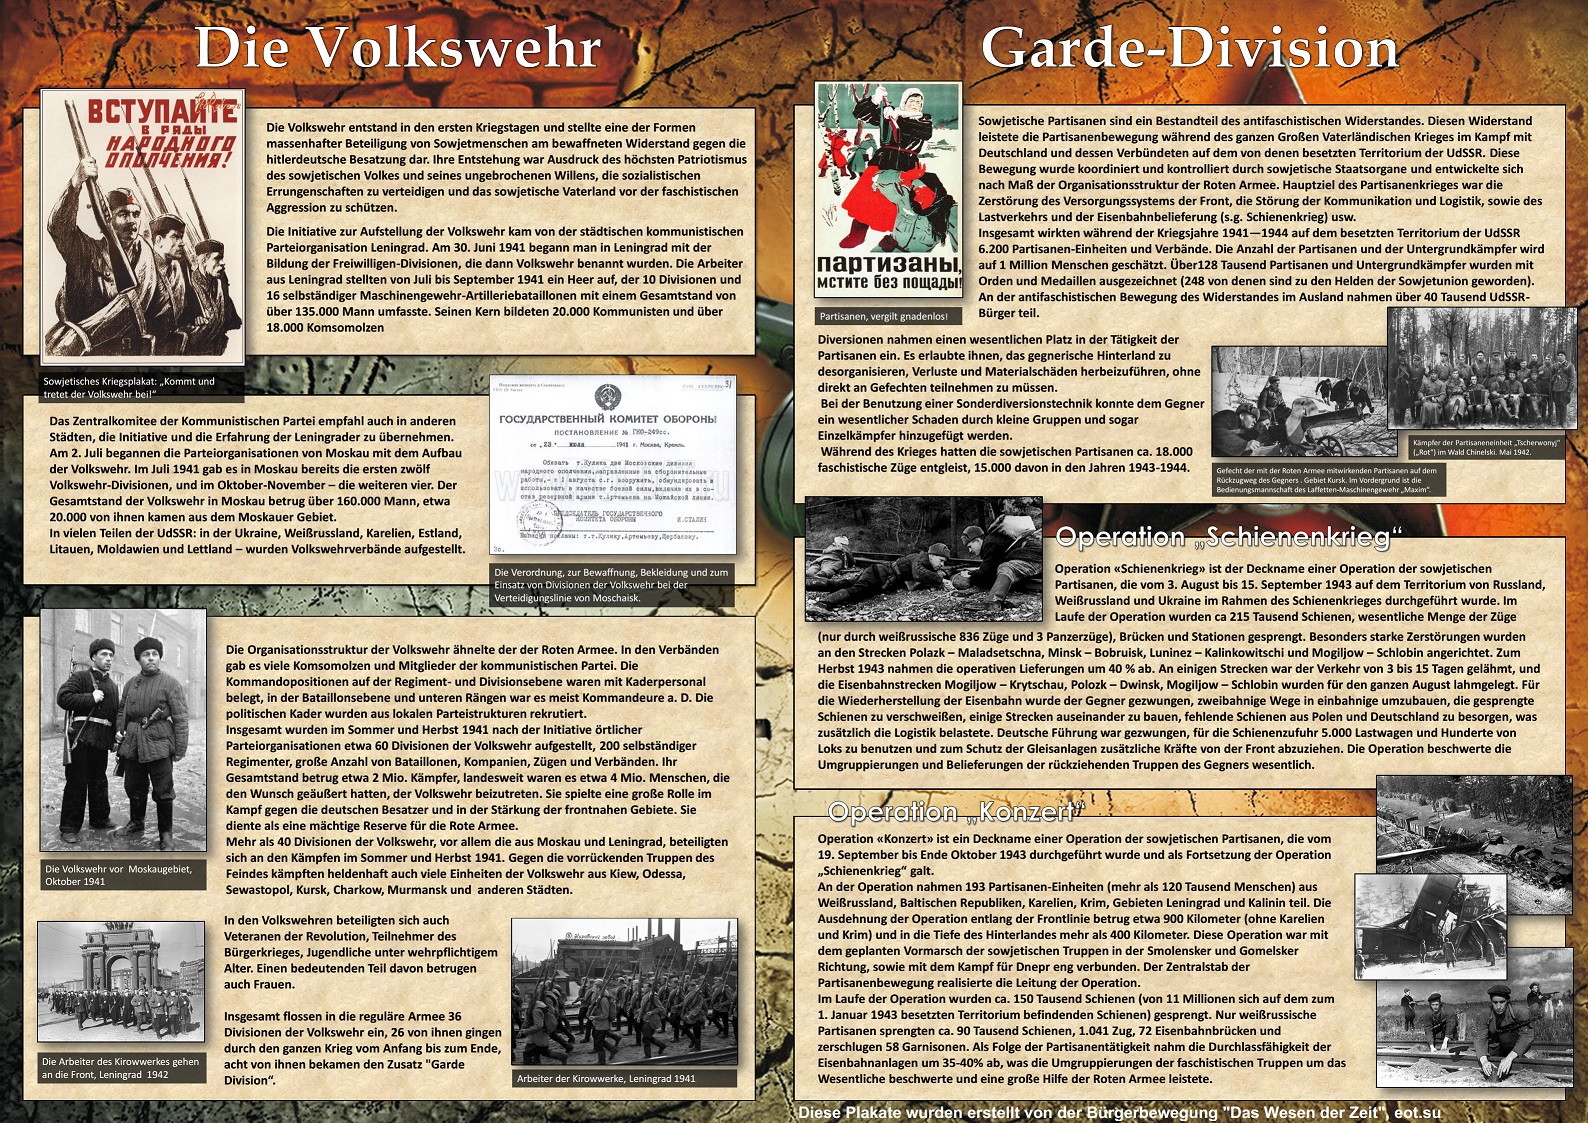 1. Volkswehr und Garde-Division